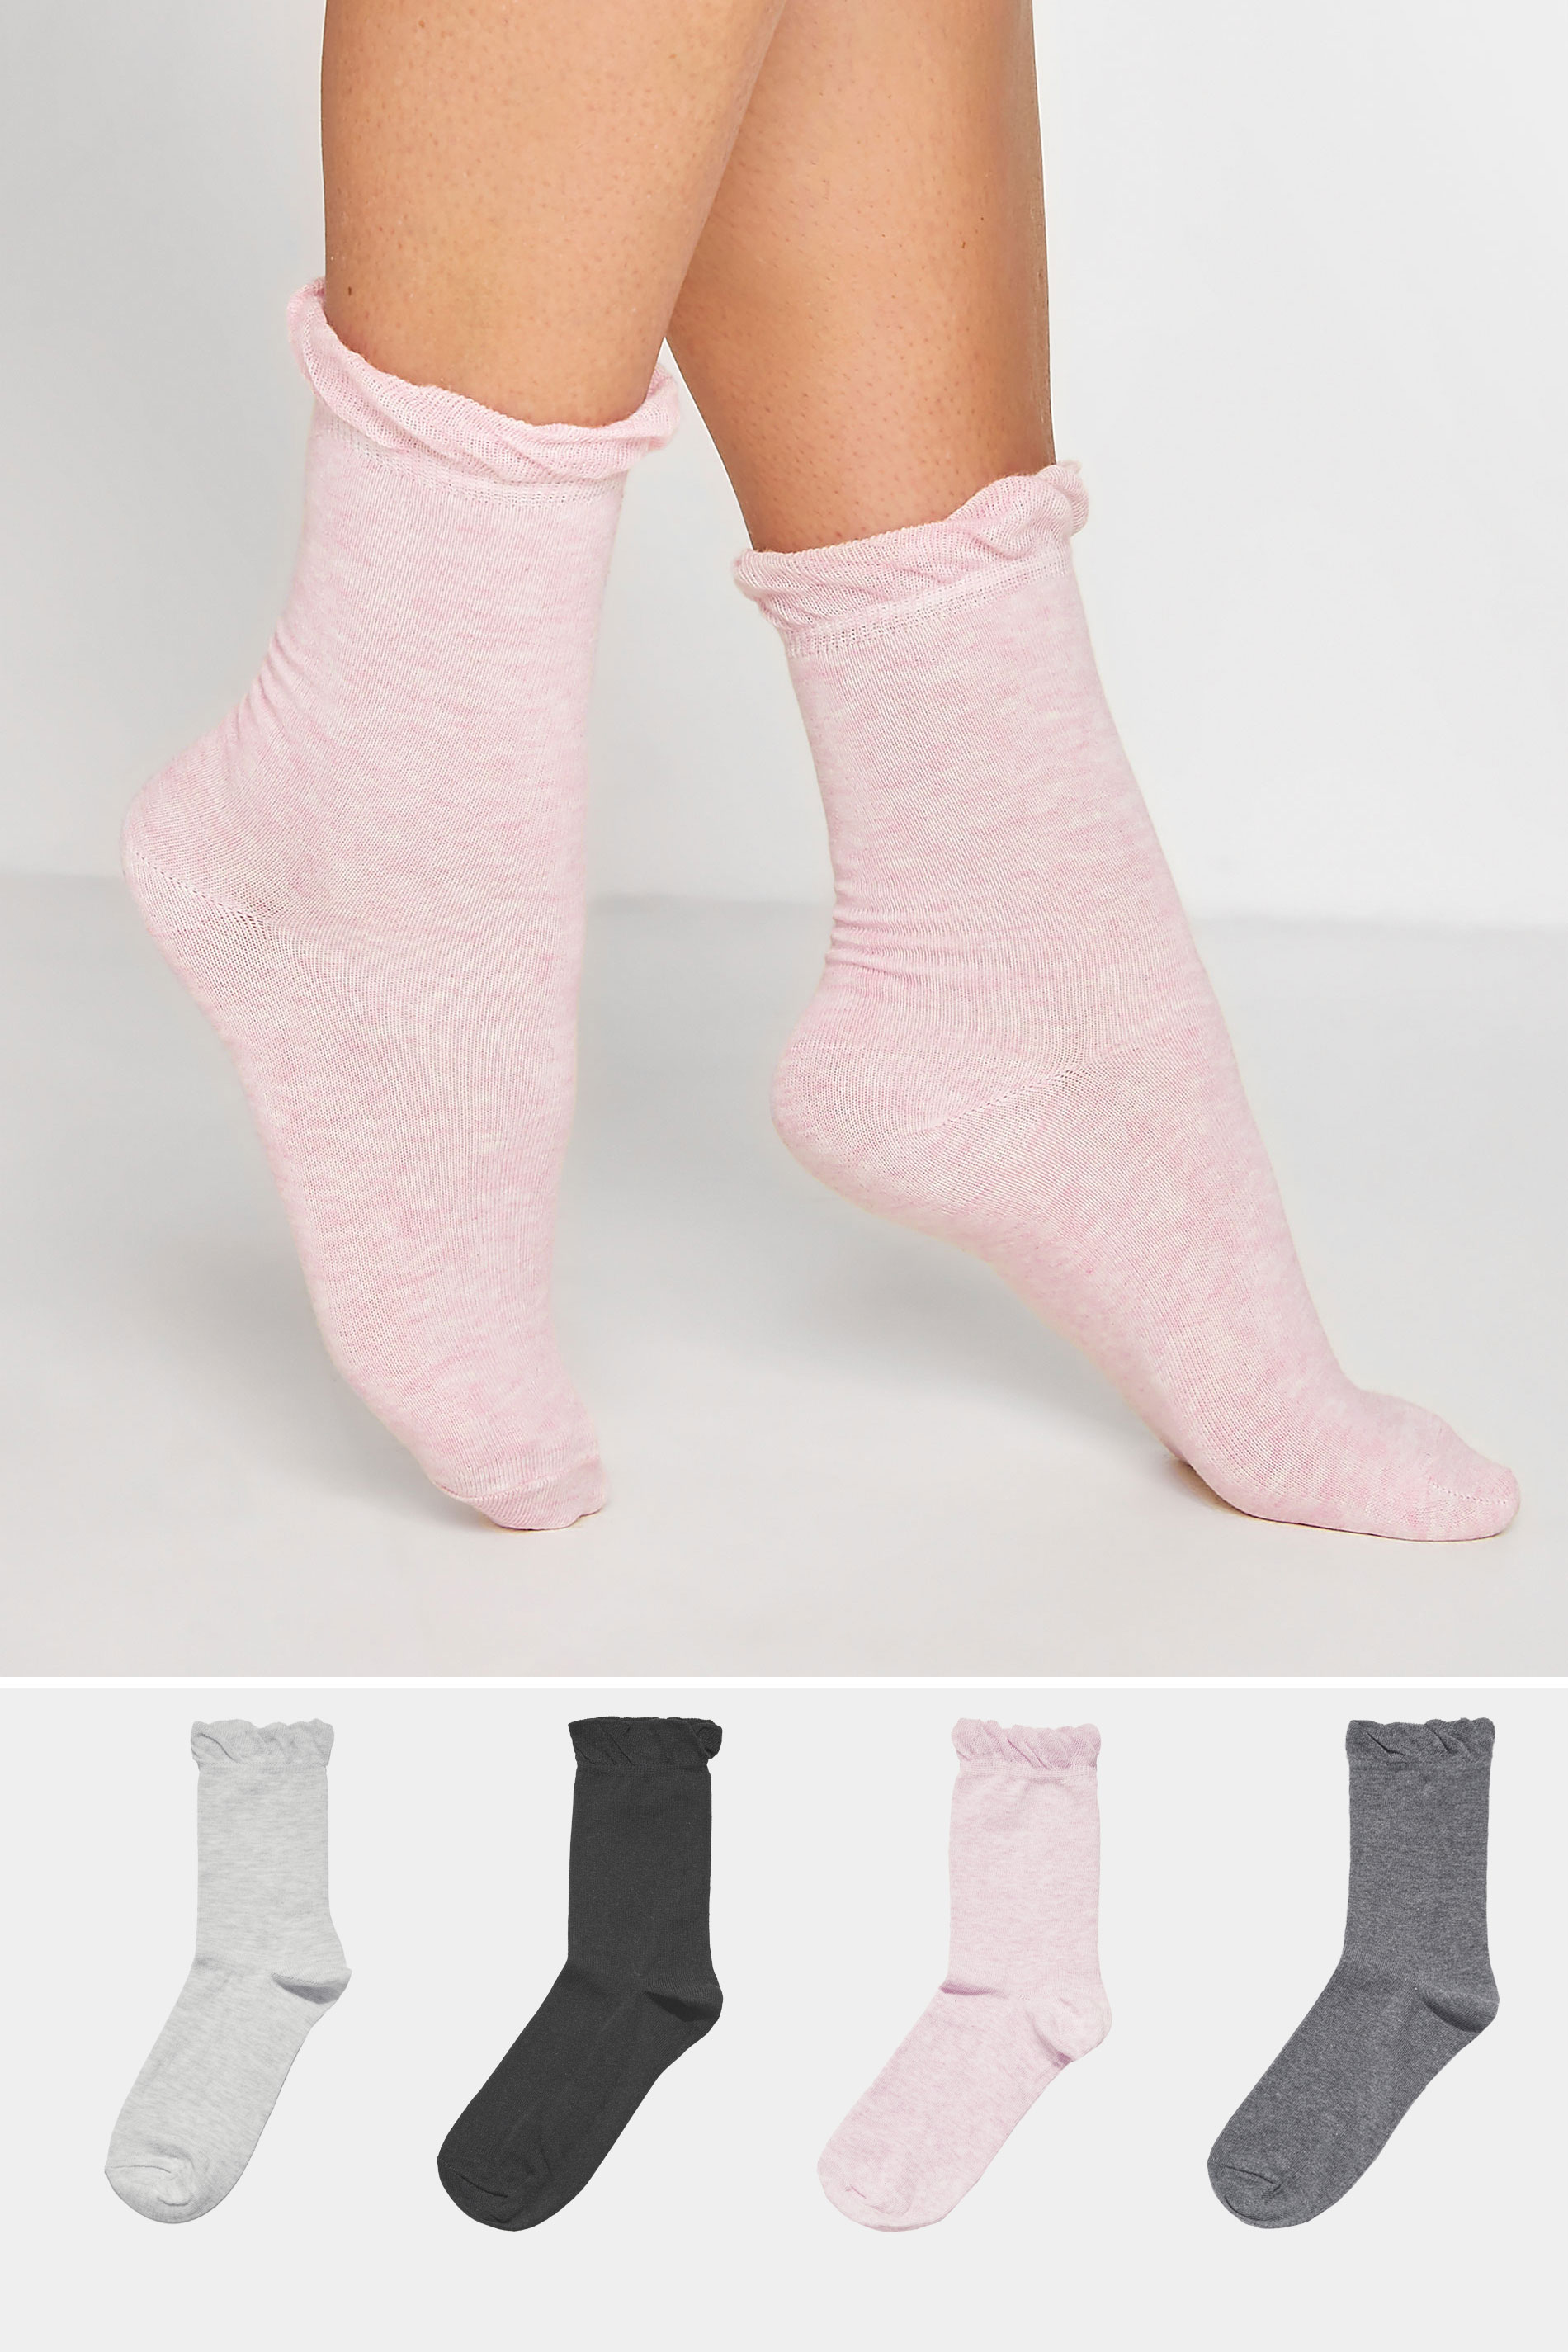 4 PACK Grey & Pink Ankle Socks_155373.jpg